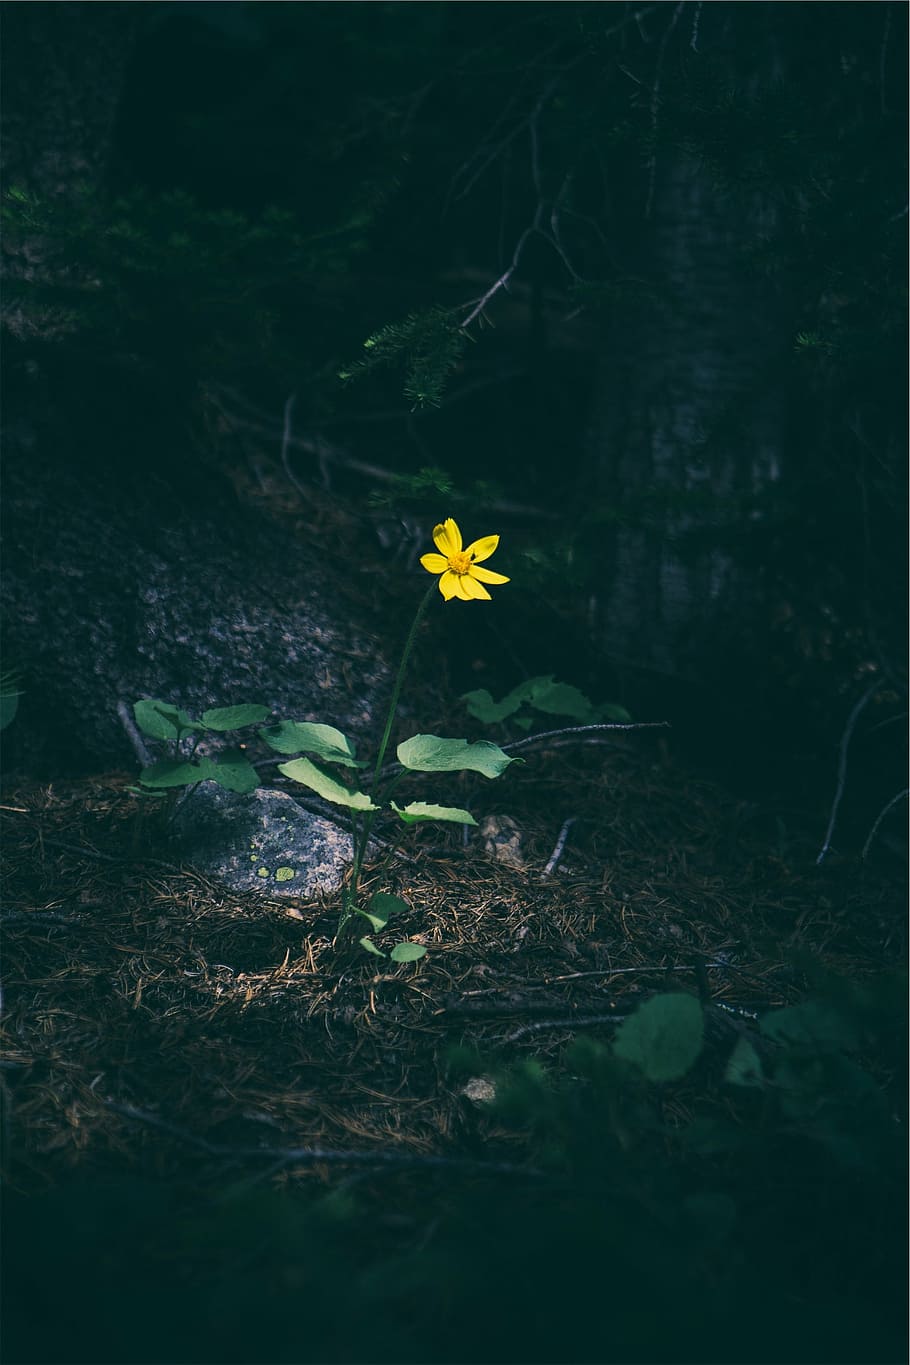 selectivo, fotografía de enfoque, amarillo, flor, enfoque, fotografía, margarita, bosque, naturaleza, crecimiento